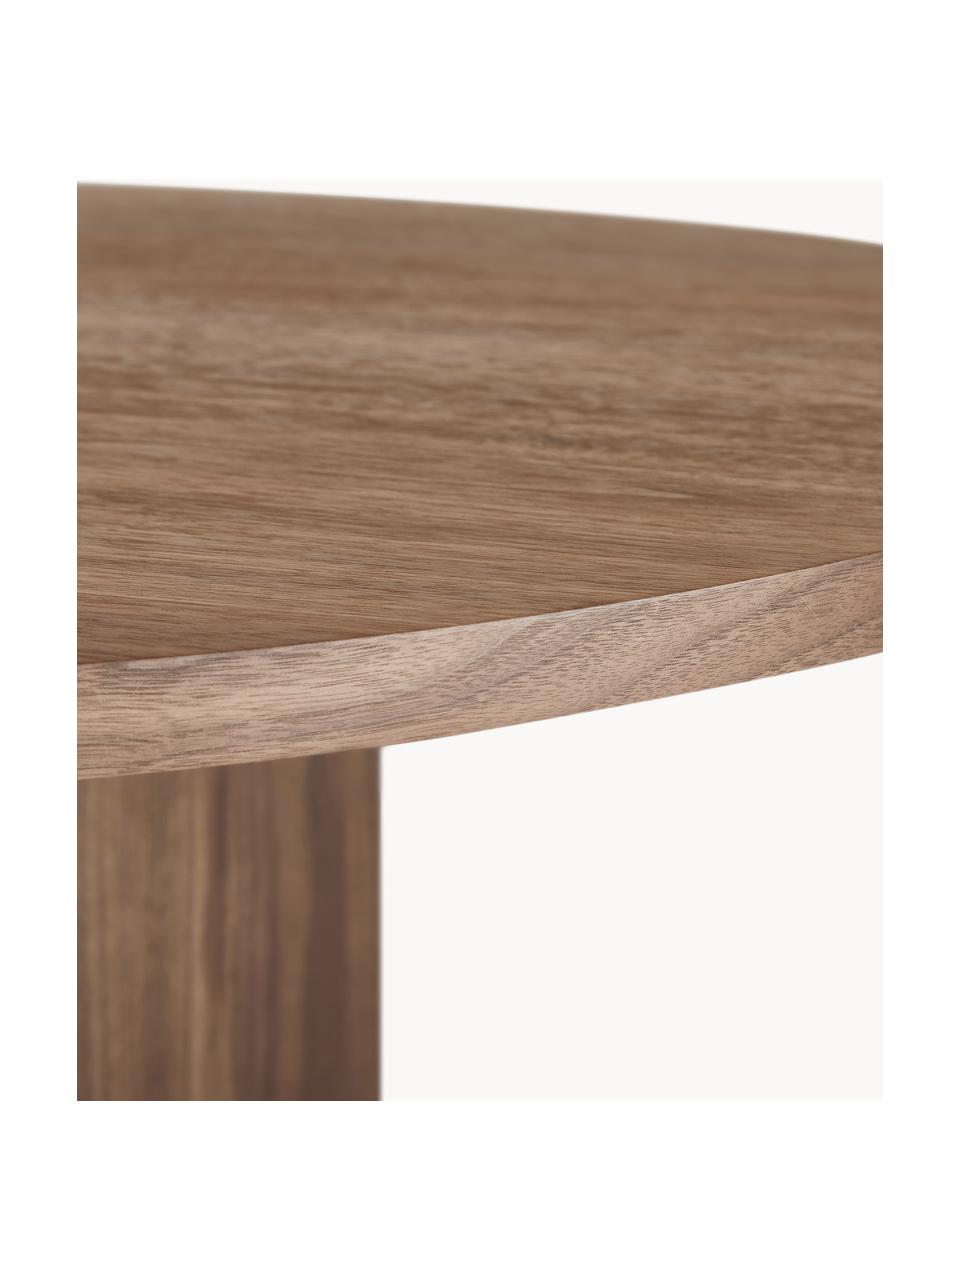 Oválny jedálenský stôl z dreva Toni, 200 x 90 cm, MDF-doska strednej hustoty s dyhou z orechového dreva, lakované

Tento produkt je vyrobený z trvalo udržateľného dreva s certifikátom FSC®., Orechové drevo, Š 200 x V 90 cm